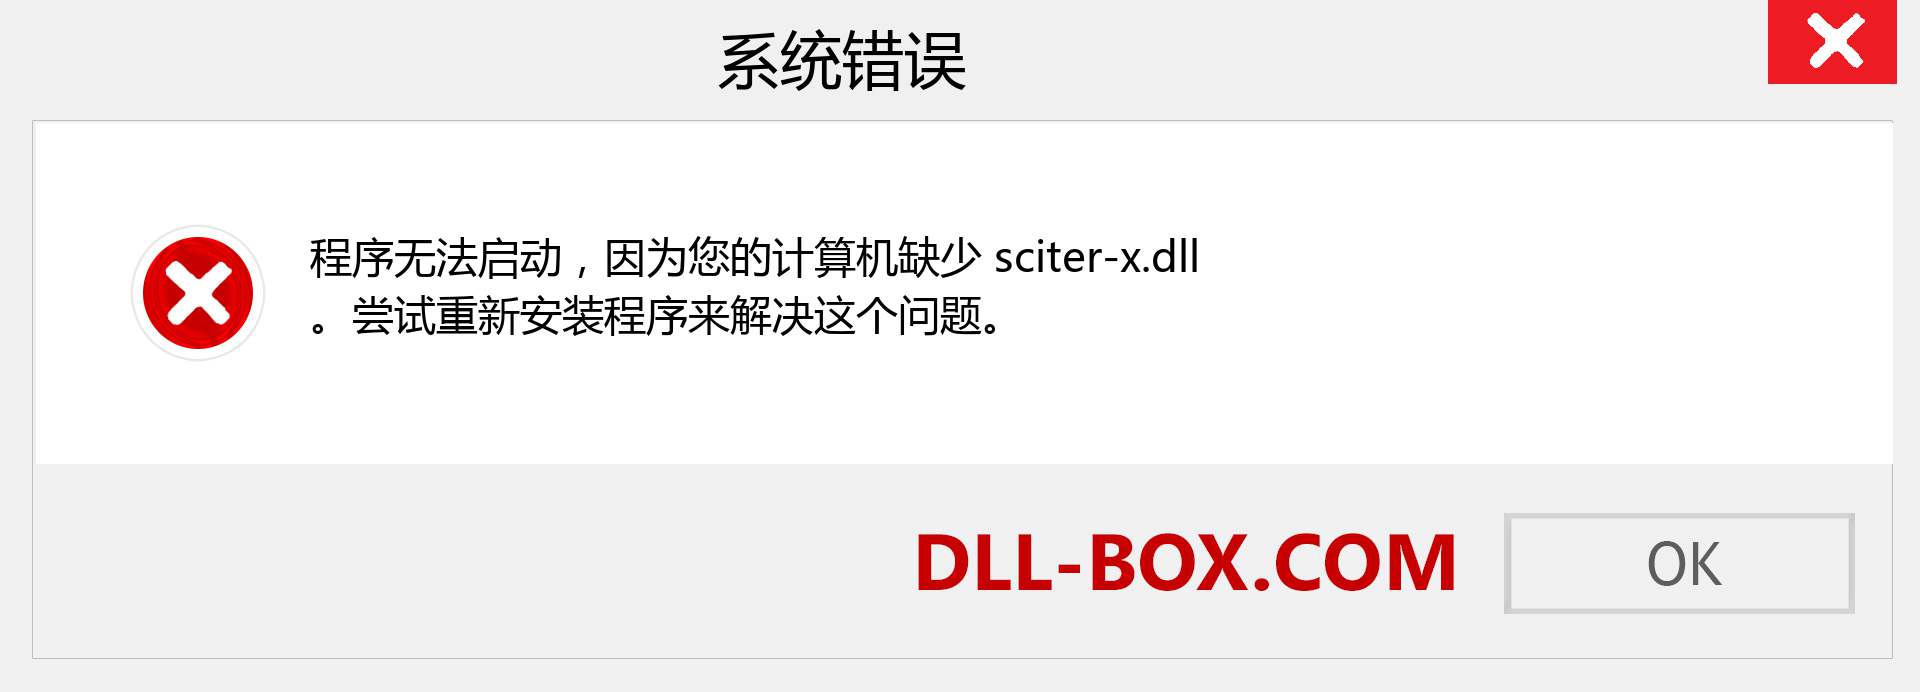 sciter-x.dll 文件丢失？。 适用于 Windows 7、8、10 的下载 - 修复 Windows、照片、图像上的 sciter-x dll 丢失错误